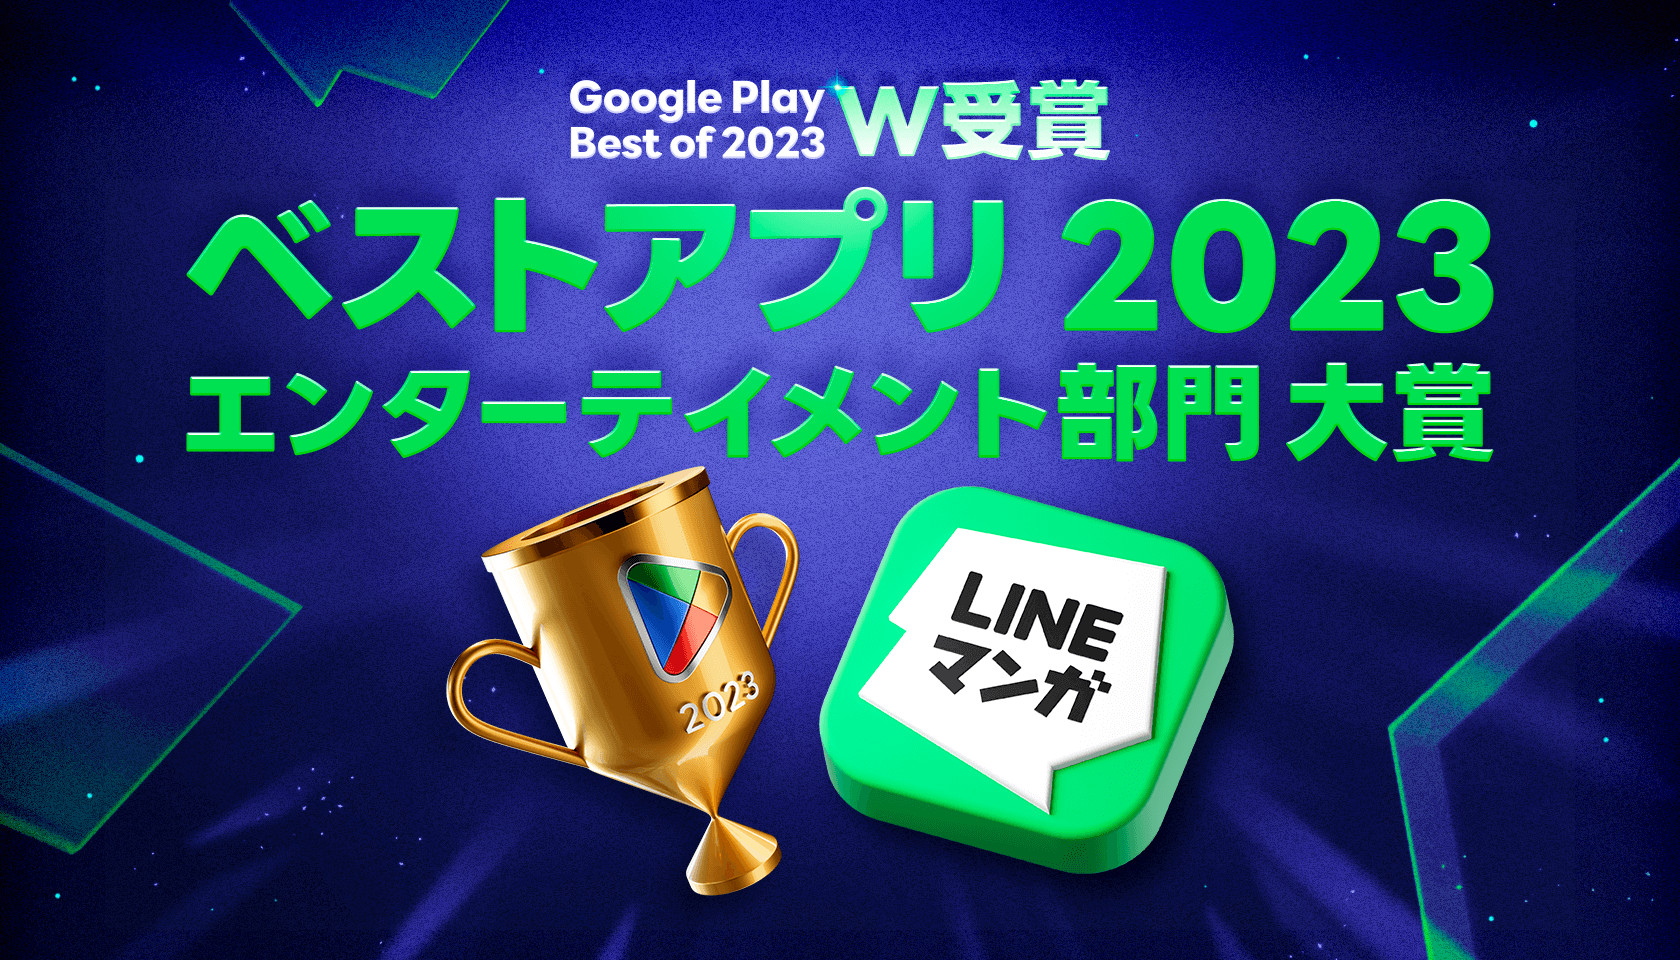 「LINEマンガ」がベストアプリ 2023を受賞